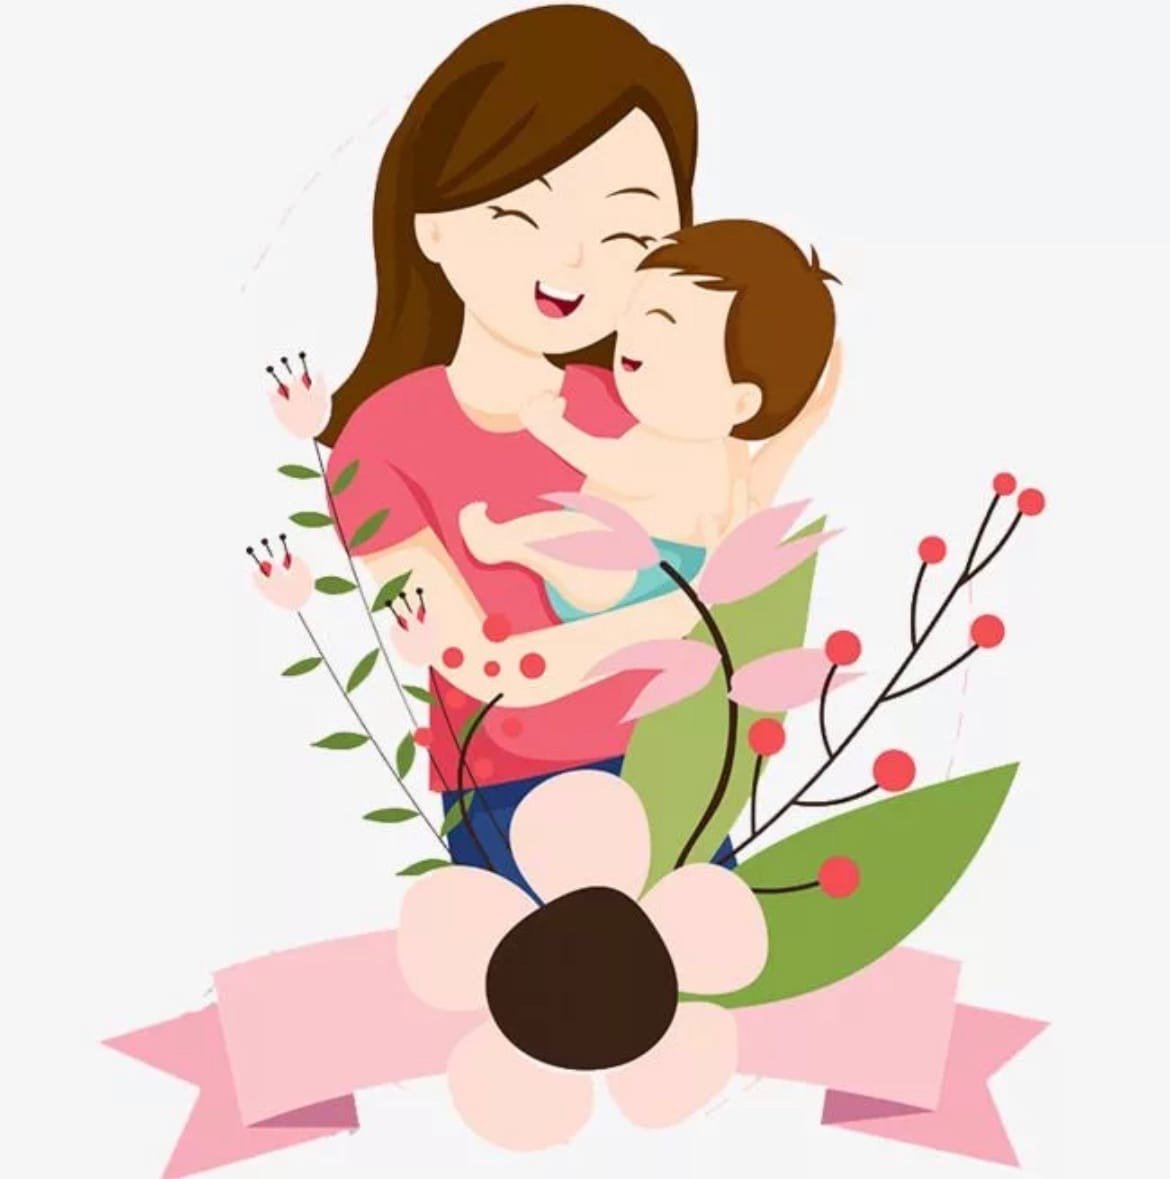 Мамы и матери 8. Рисунок ко Дню матери. День матери иллюстрации. Мама картинка для детей. Рисунок маме на день матери.